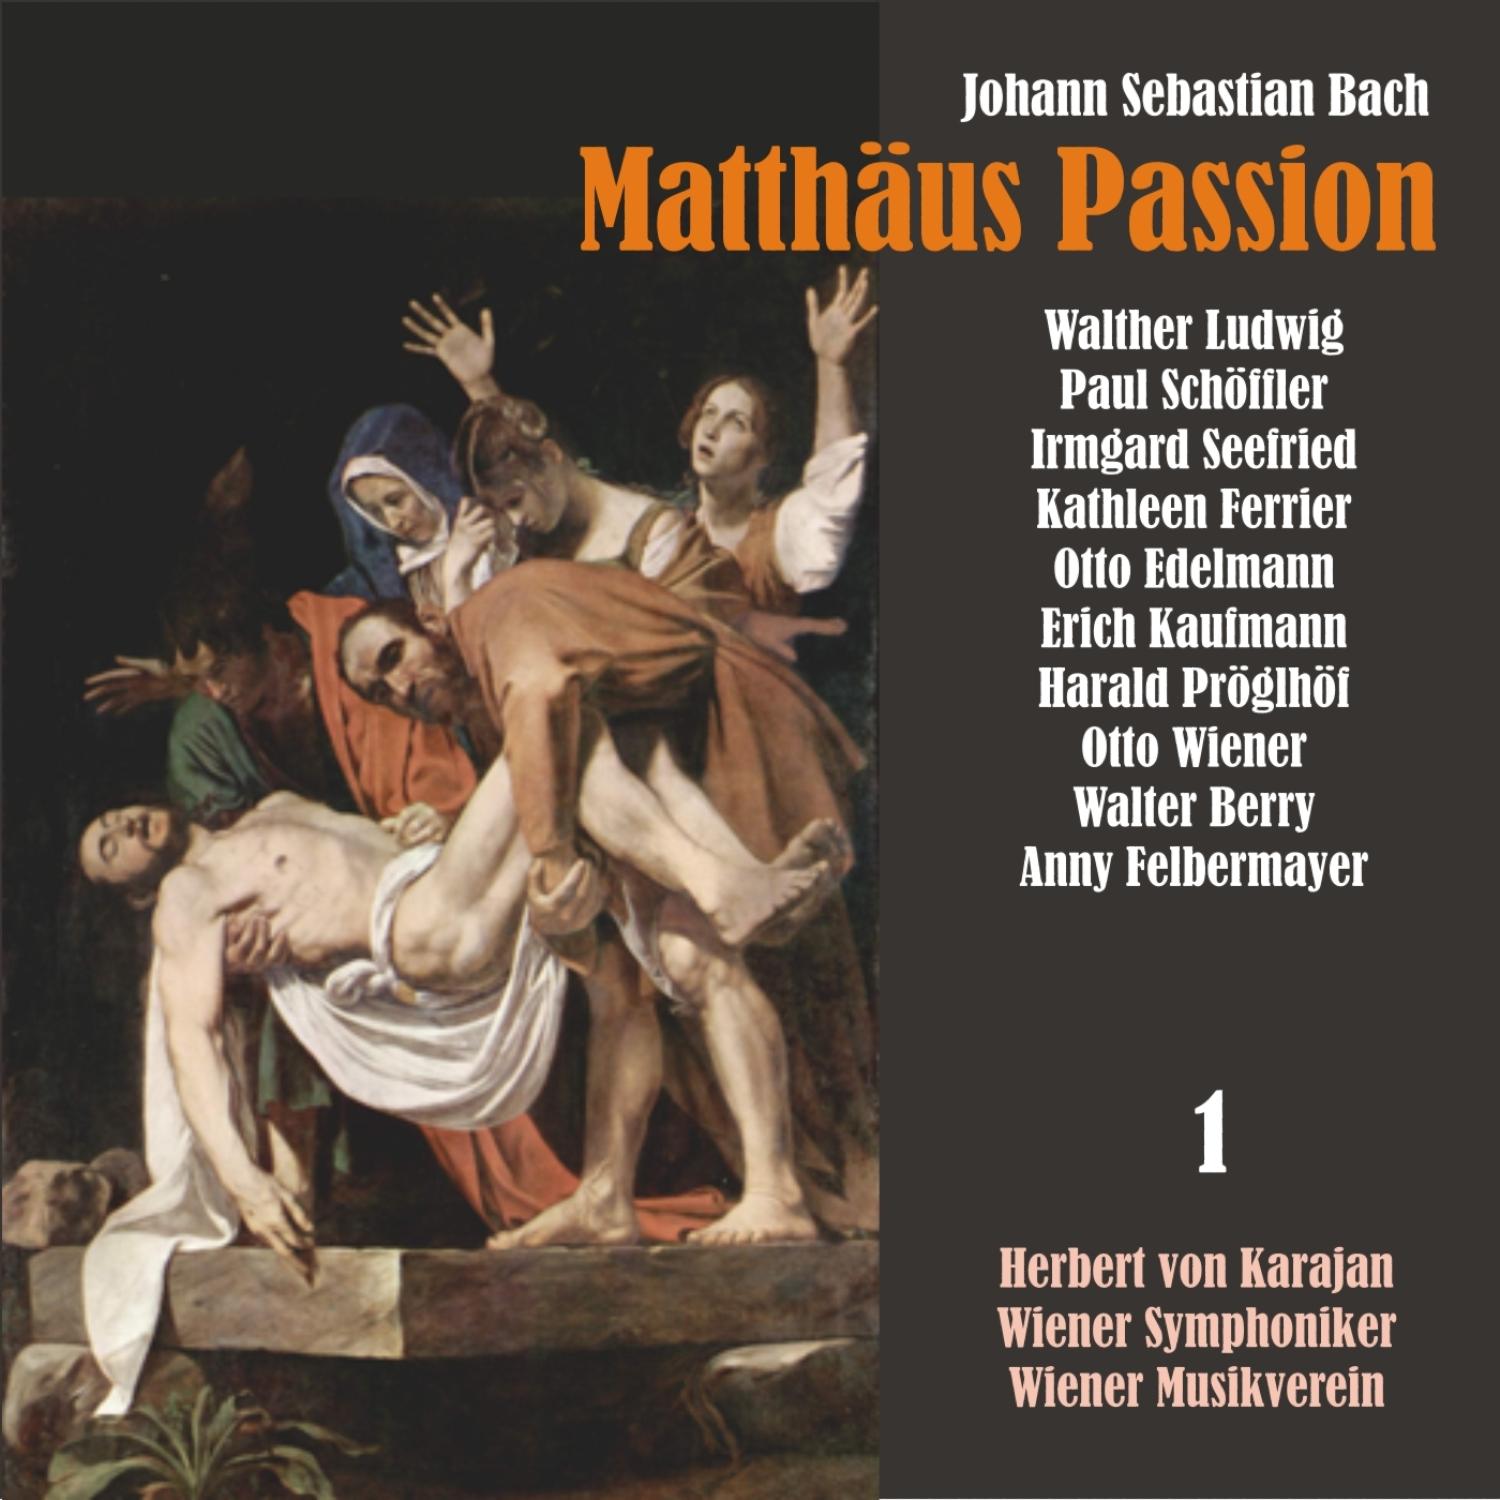 Matthäus Passion, BWV 244: °Ich will hier bei dir stehen"